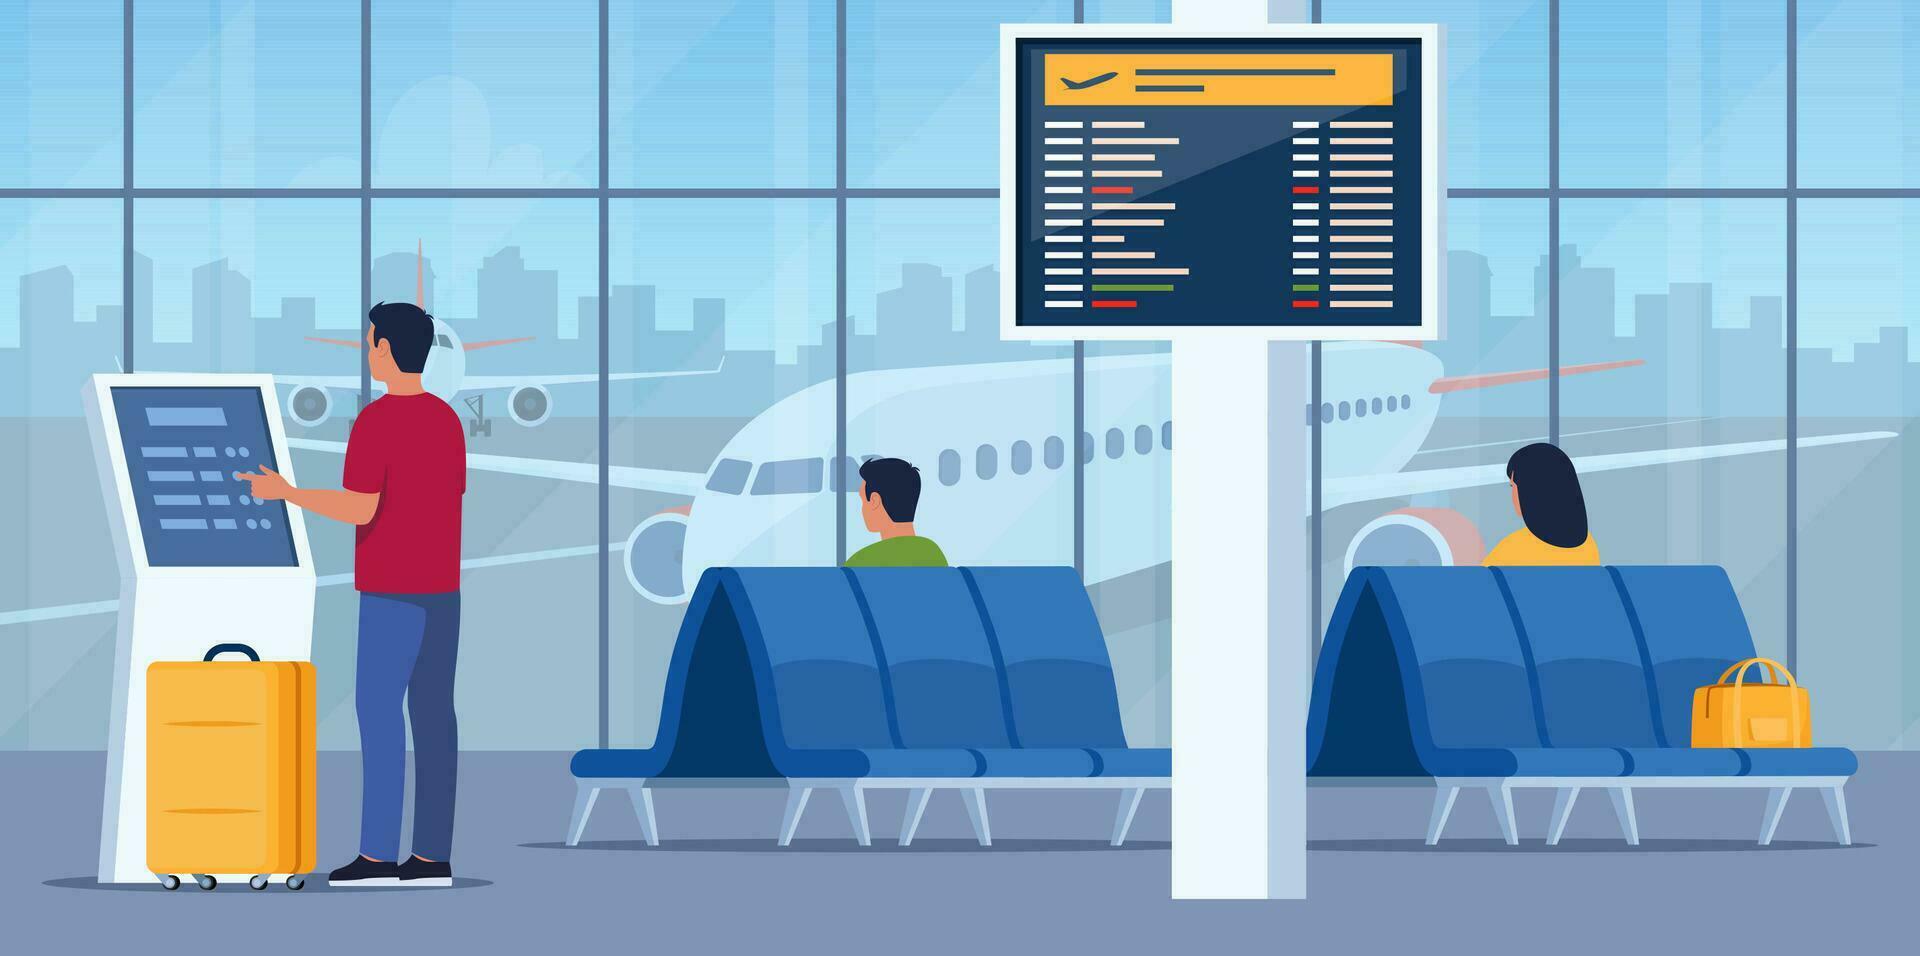 Menschen im Flughafen Ankunft warten Zimmer oder Abfahrt Salon mit Stühle und Information Tafel. Mann selbst prüfen im beim automatisch Maschine oder Kauf Fahrkarte mit interaktiv Terminal. Vektor Illustration.